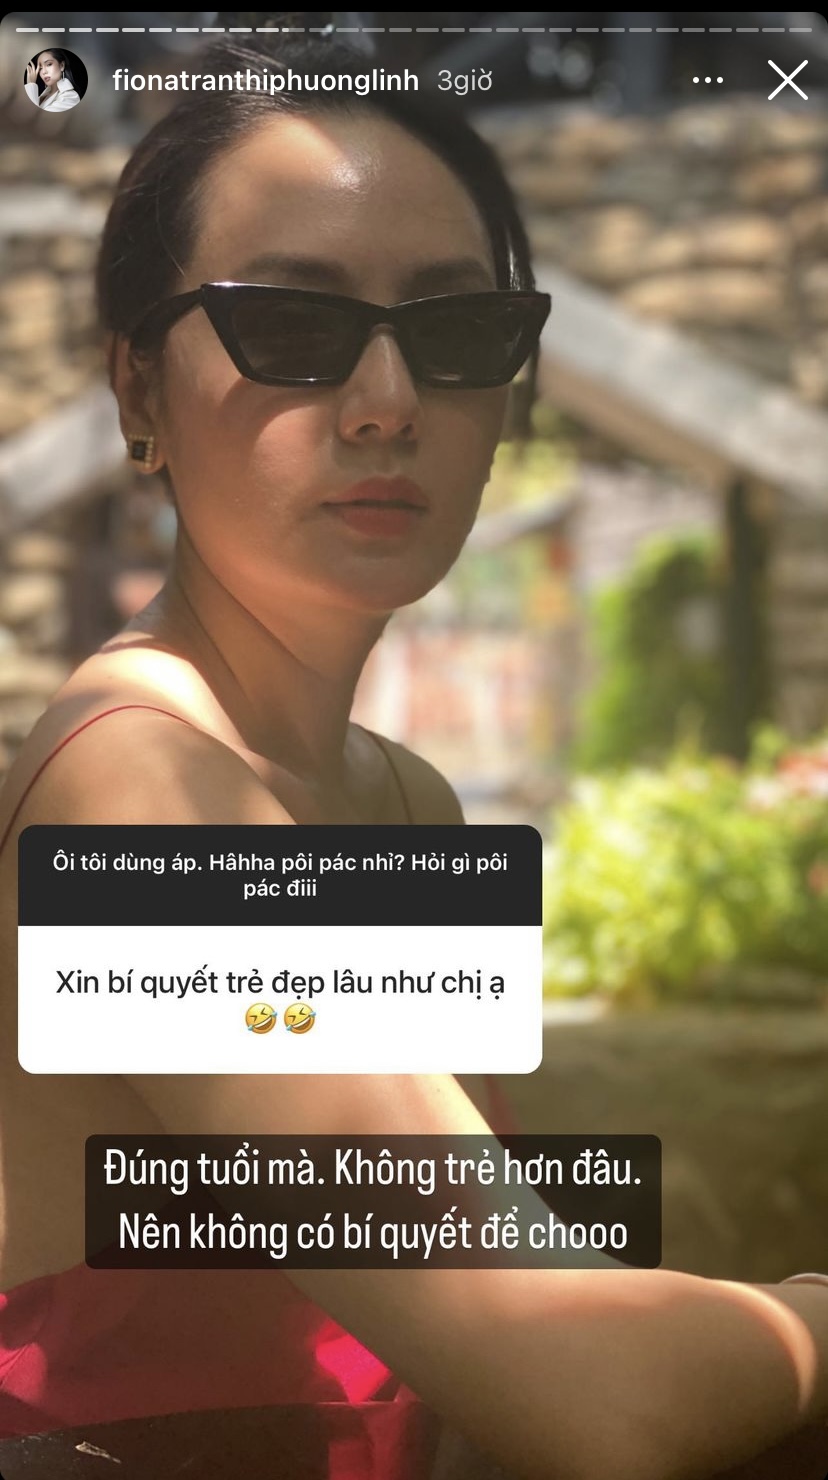 Phương Linh trả lời fan về mối quan hệ với Hà Anh Tuấn - Ảnh 2